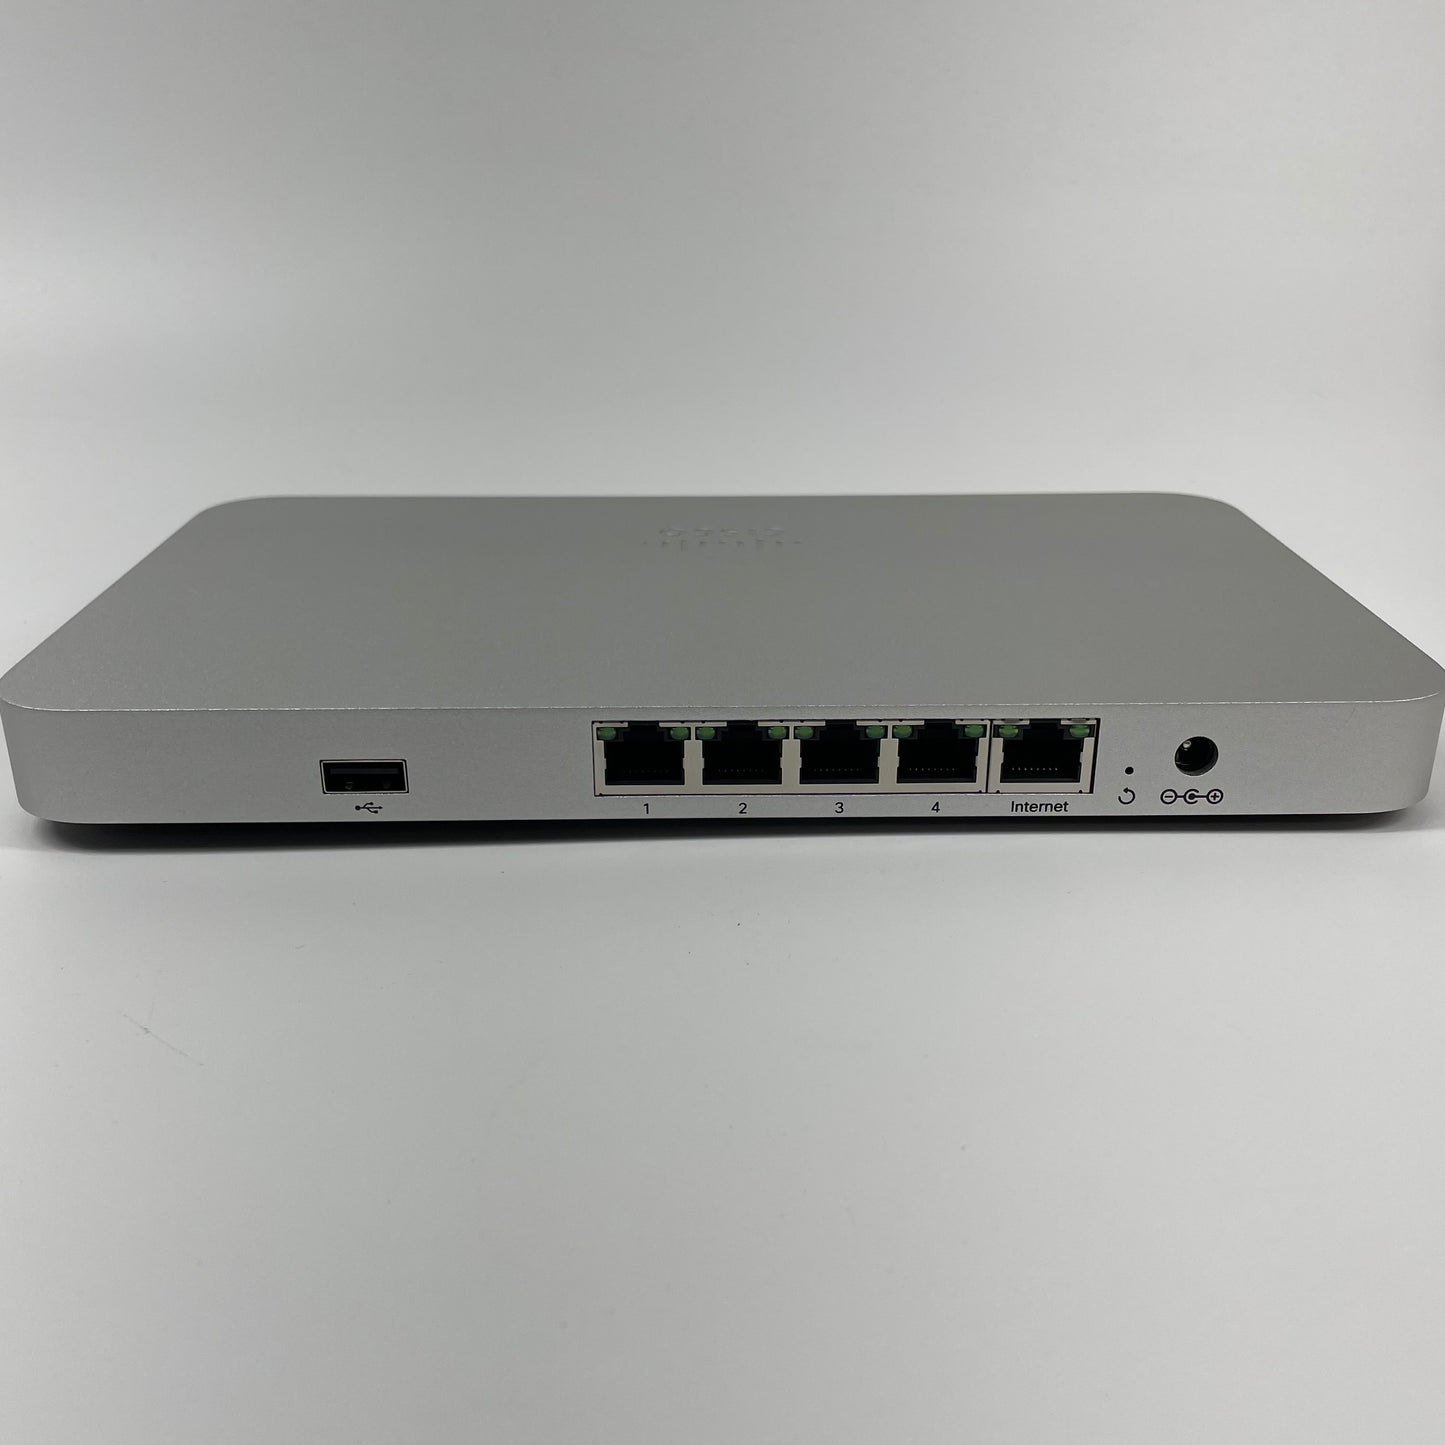 New Cisco Meraki Cloud Managed Firewall MX64-HW